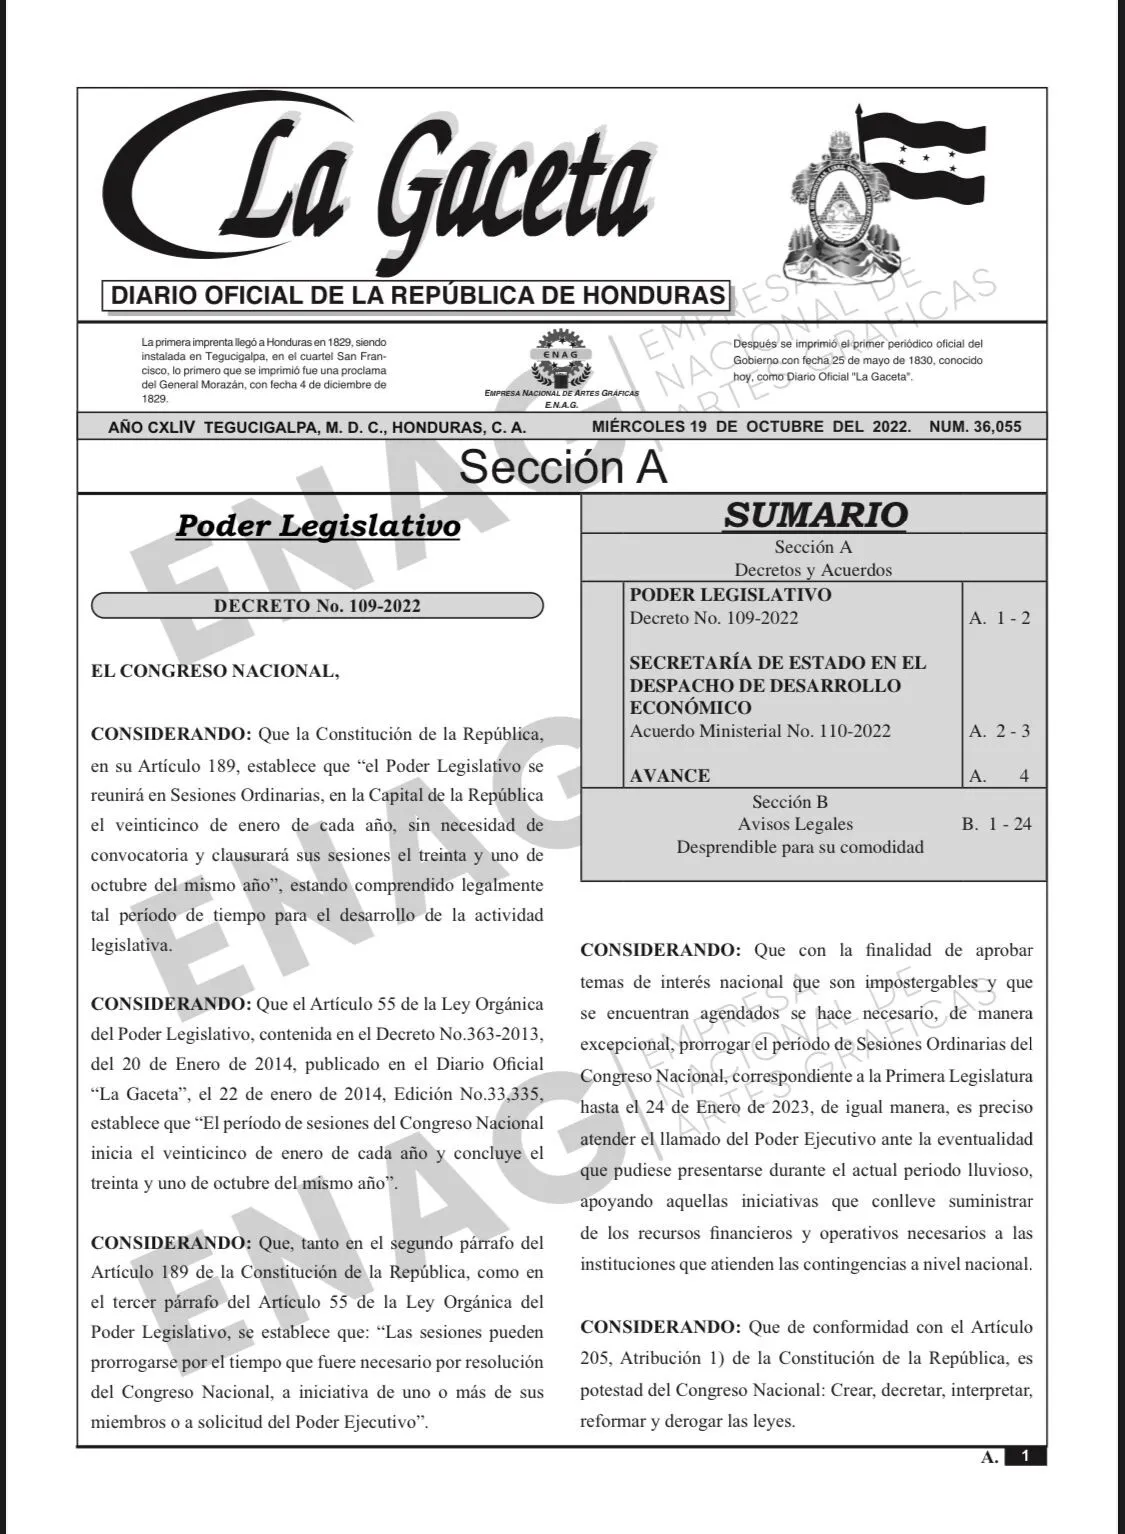 Publicado en La Gaceta decreto que habilita sesiones del CN hasta el 24 de enero 2023